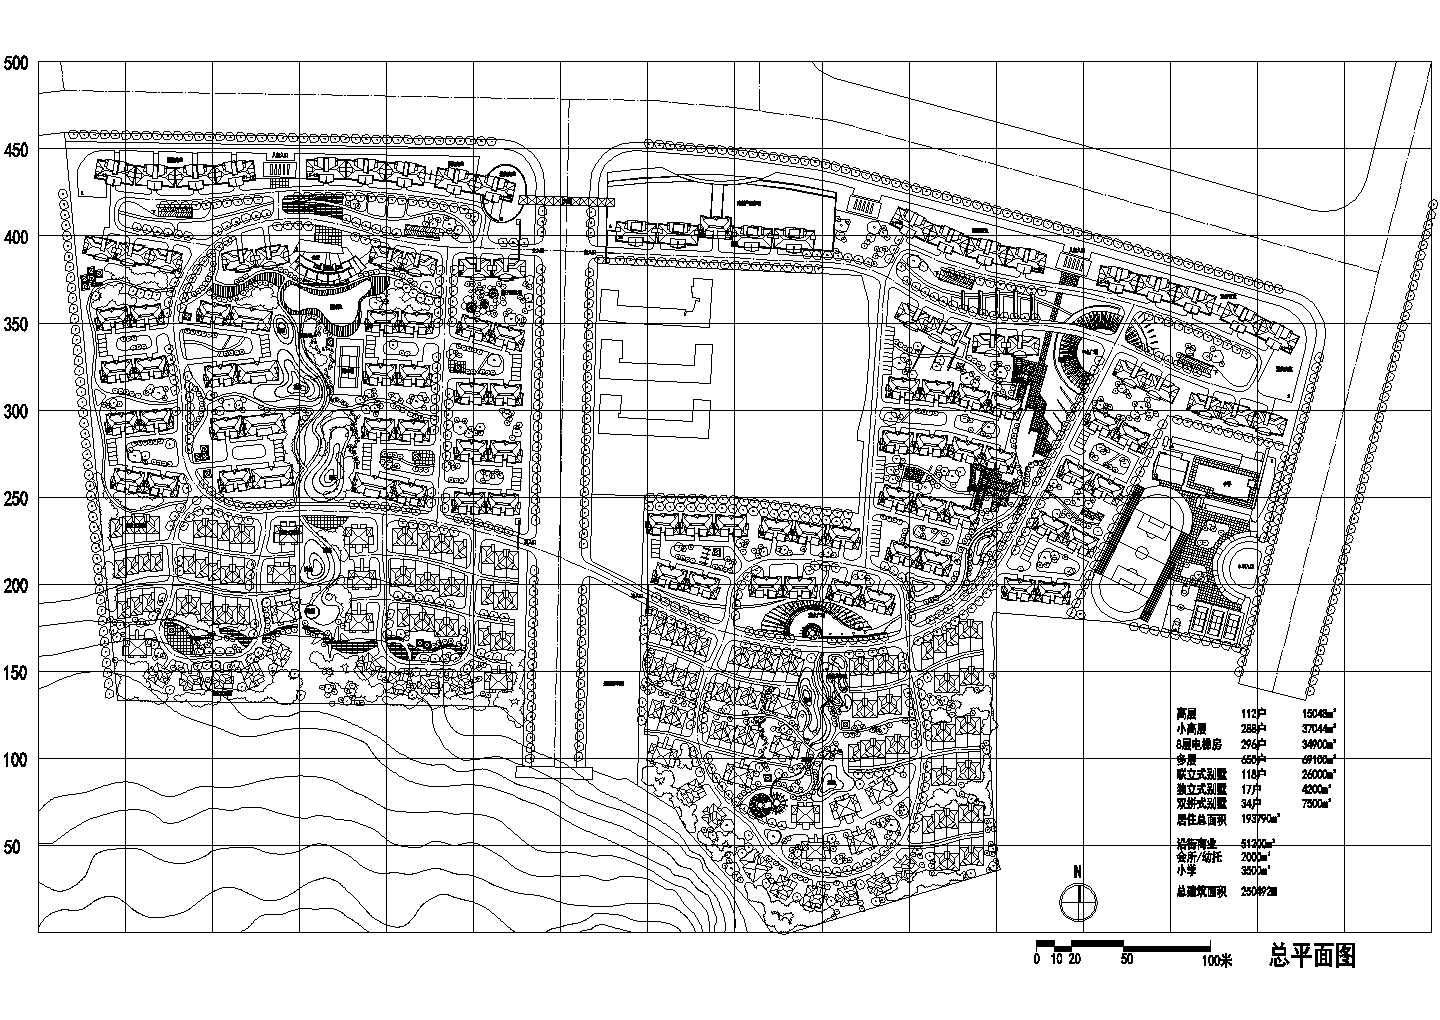 居住总面积193790平米某区域规划设计总平面图